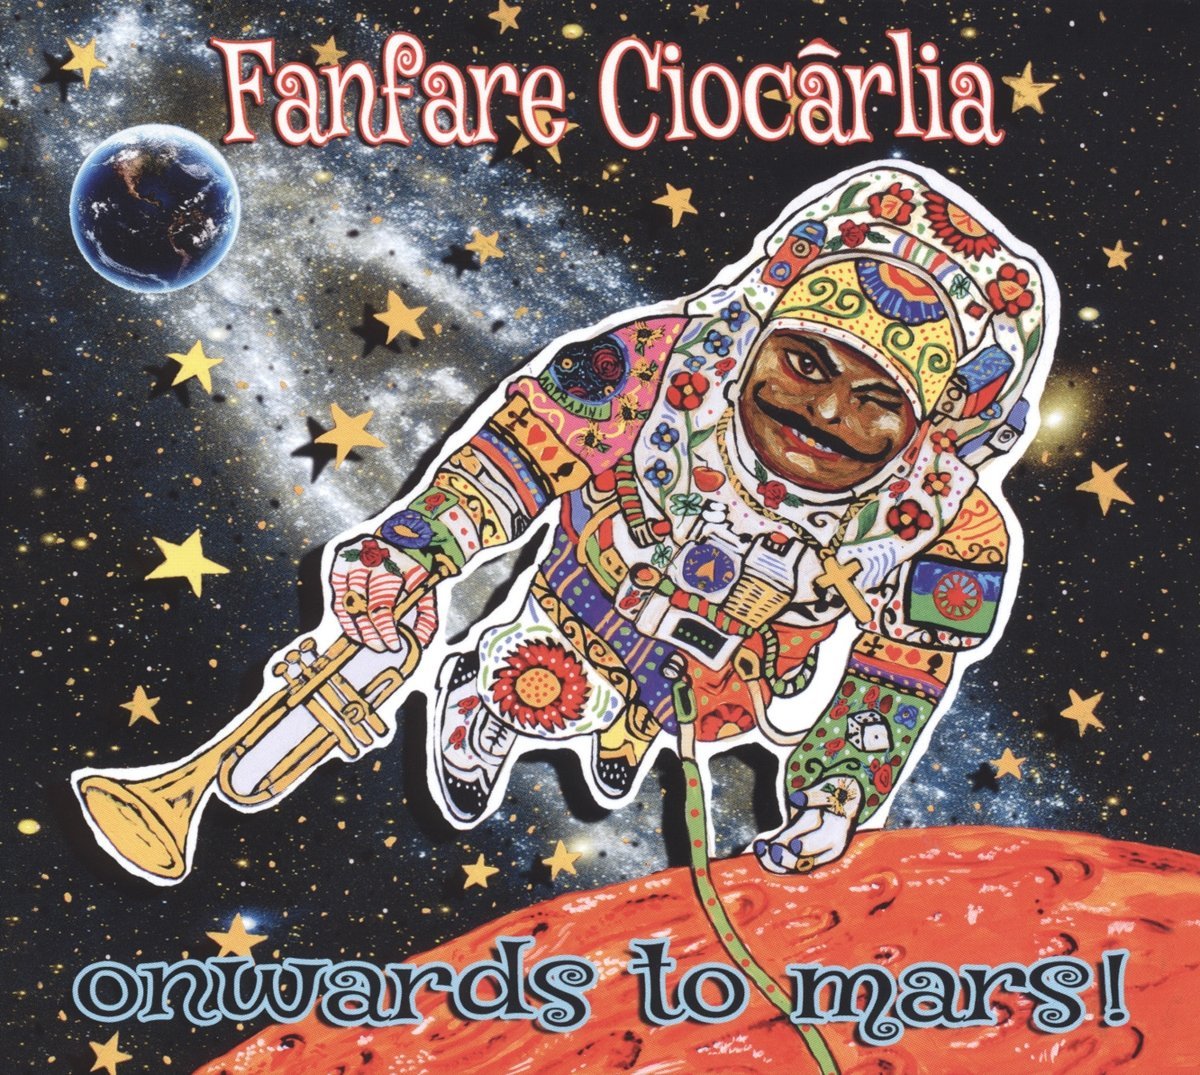 Onwards to Mars - Vinyl | Fanfare Ciocarlia